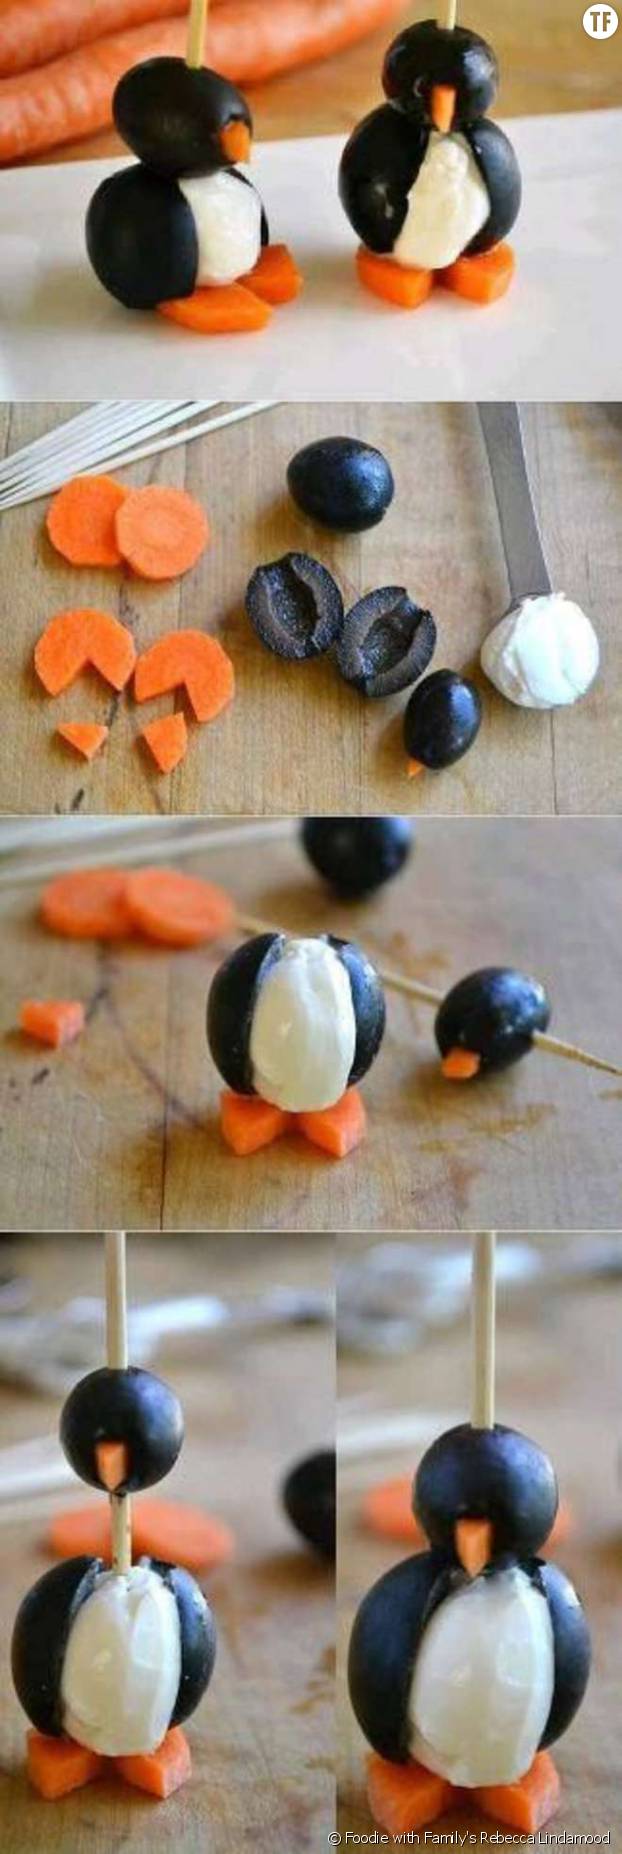 Des adorables pingouins en olive : original et super simple !